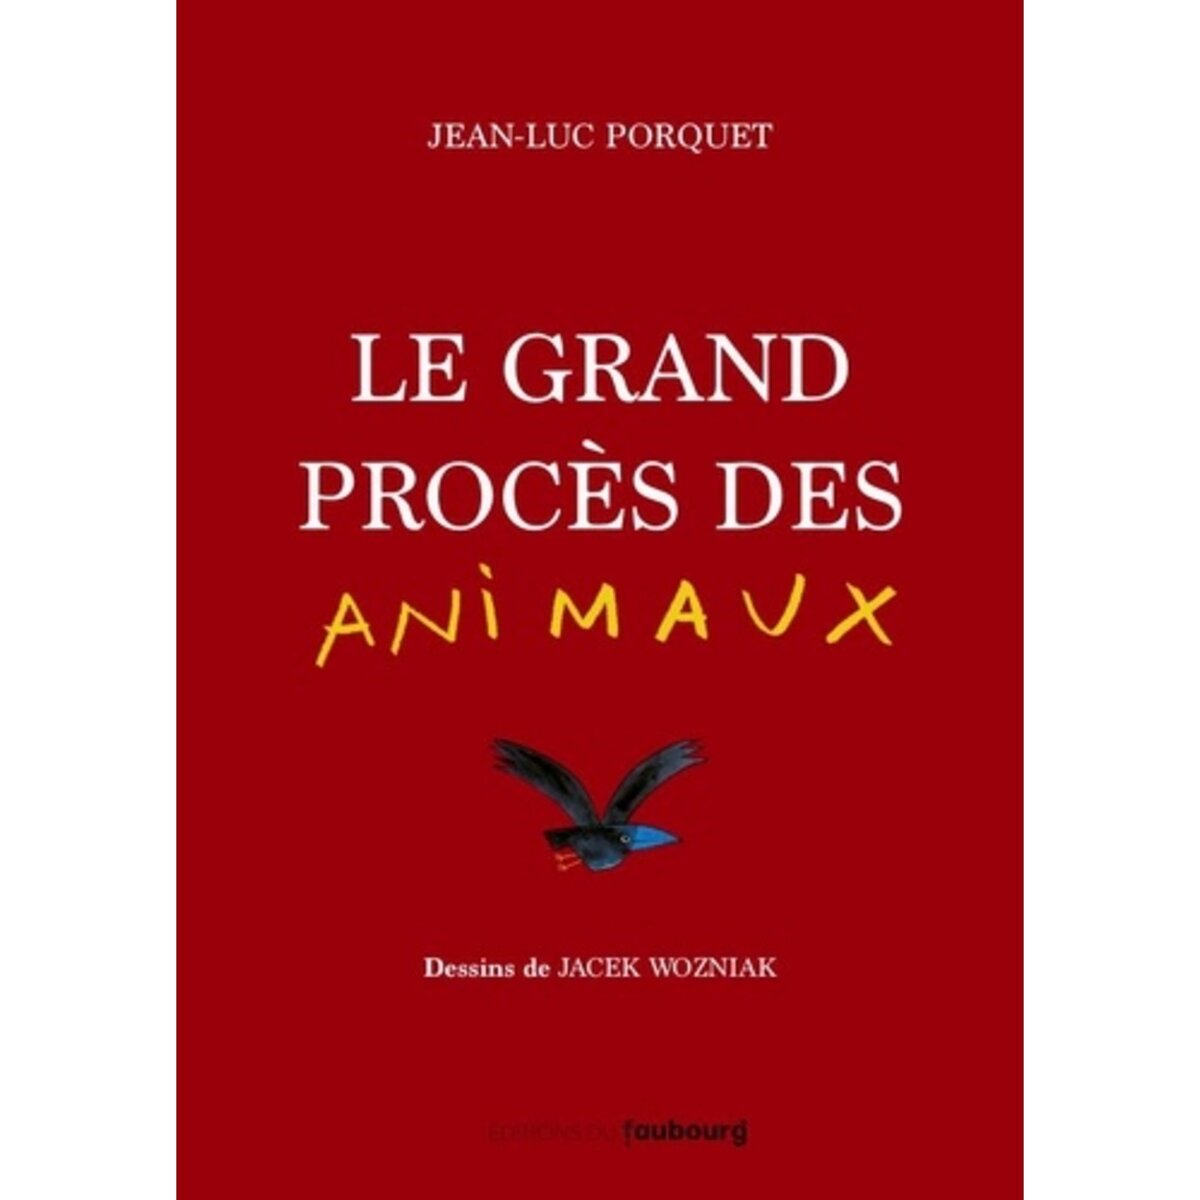  LE GRAND PROCES DES ANIMAUX, Porquet Jean-Luc